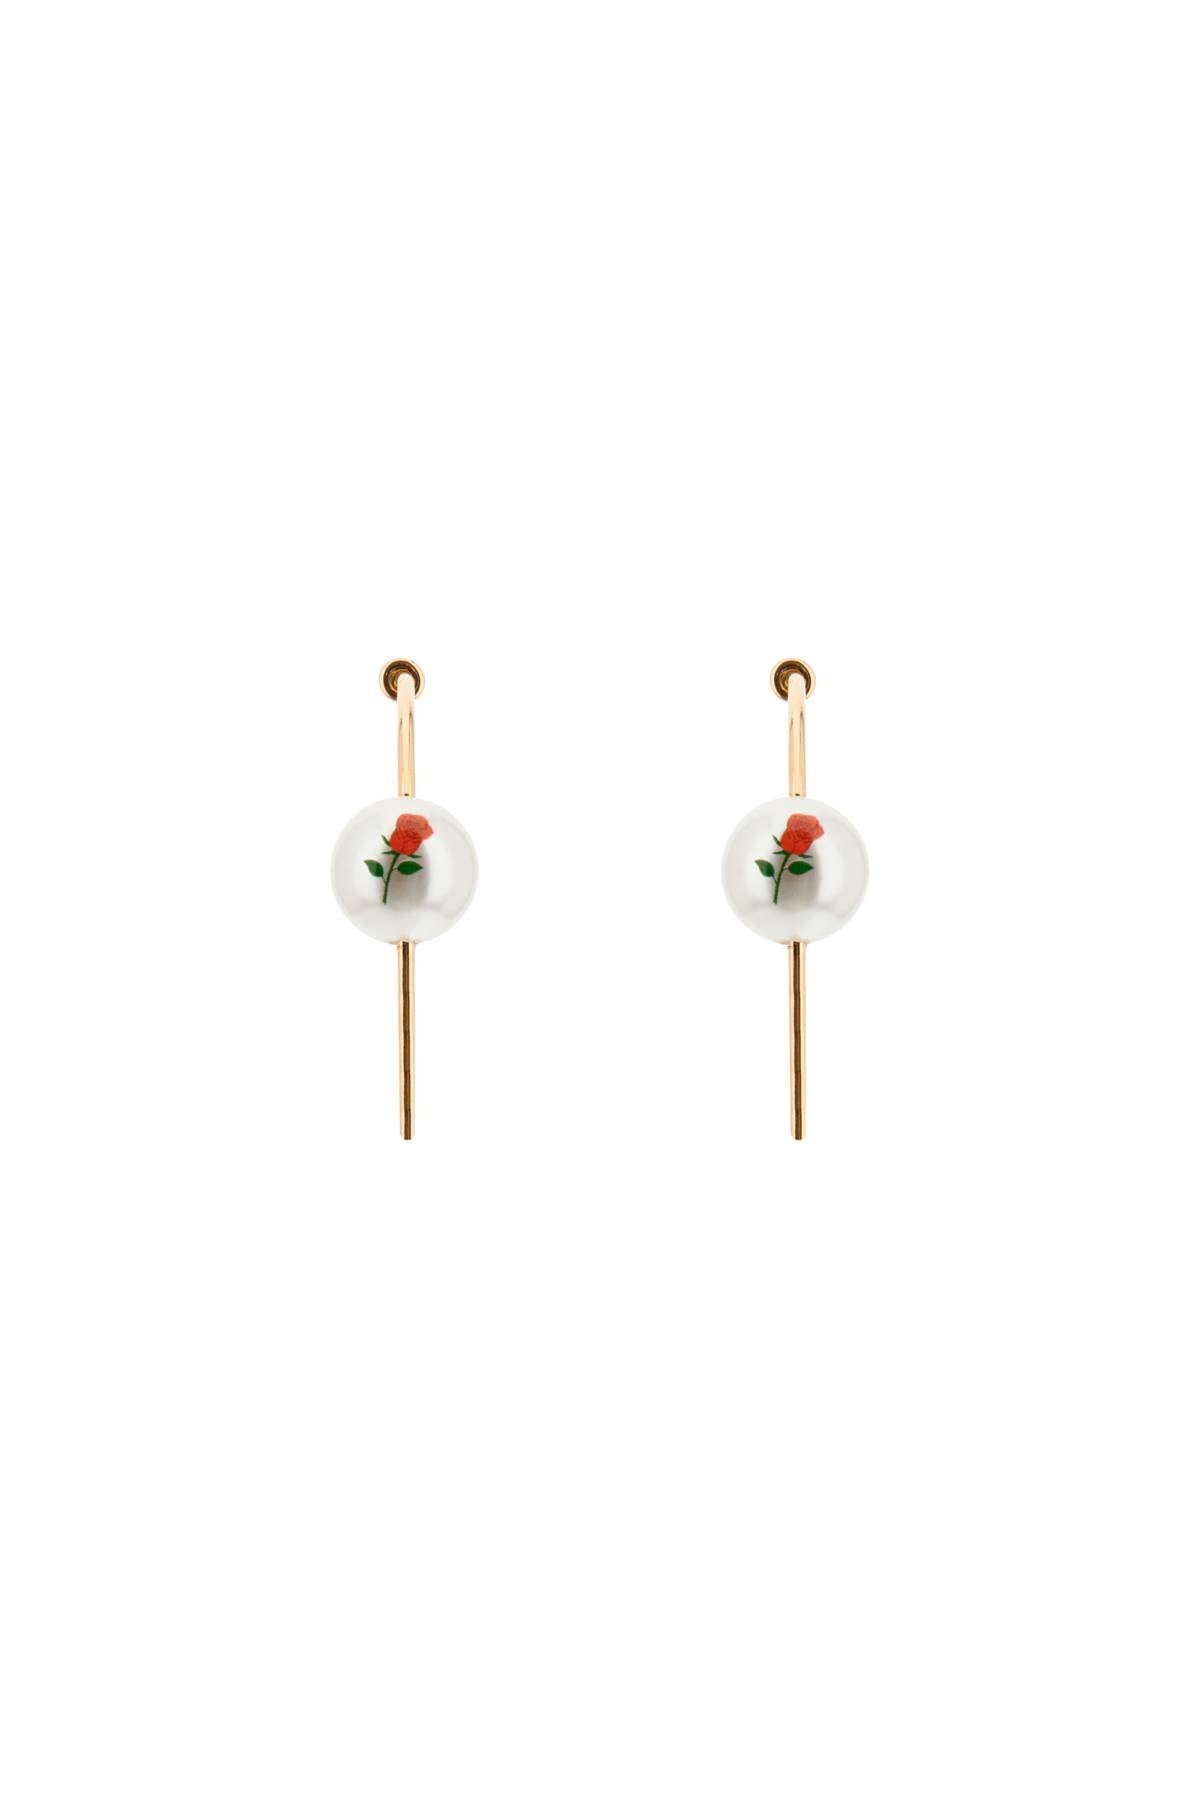 Saf safu 'pearl & roses' hoop earrings PEARL ROSES HOOP GOLD